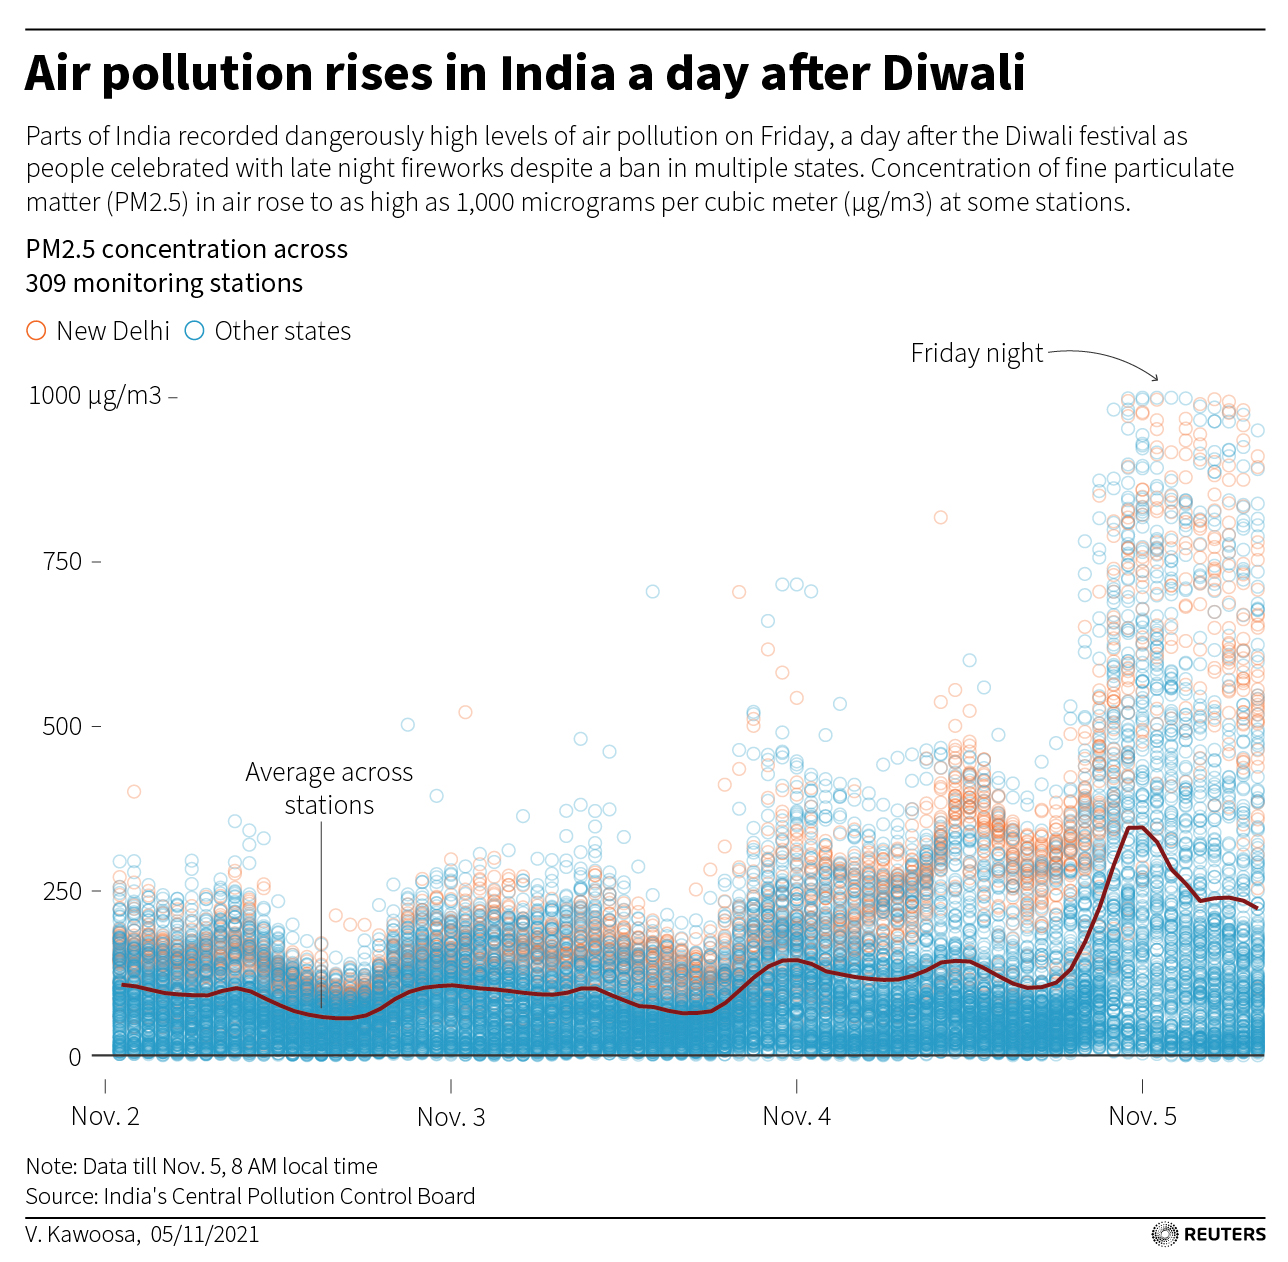 Apesar de ter sido proibido em muitos estados, níveis perigosos de poluição do ar foram relatados em algumas partes da Índia na sexta-feira, um dia após o festival Deepavali, enquanto as pessoas comemoravam com fogos de artifício à noite.